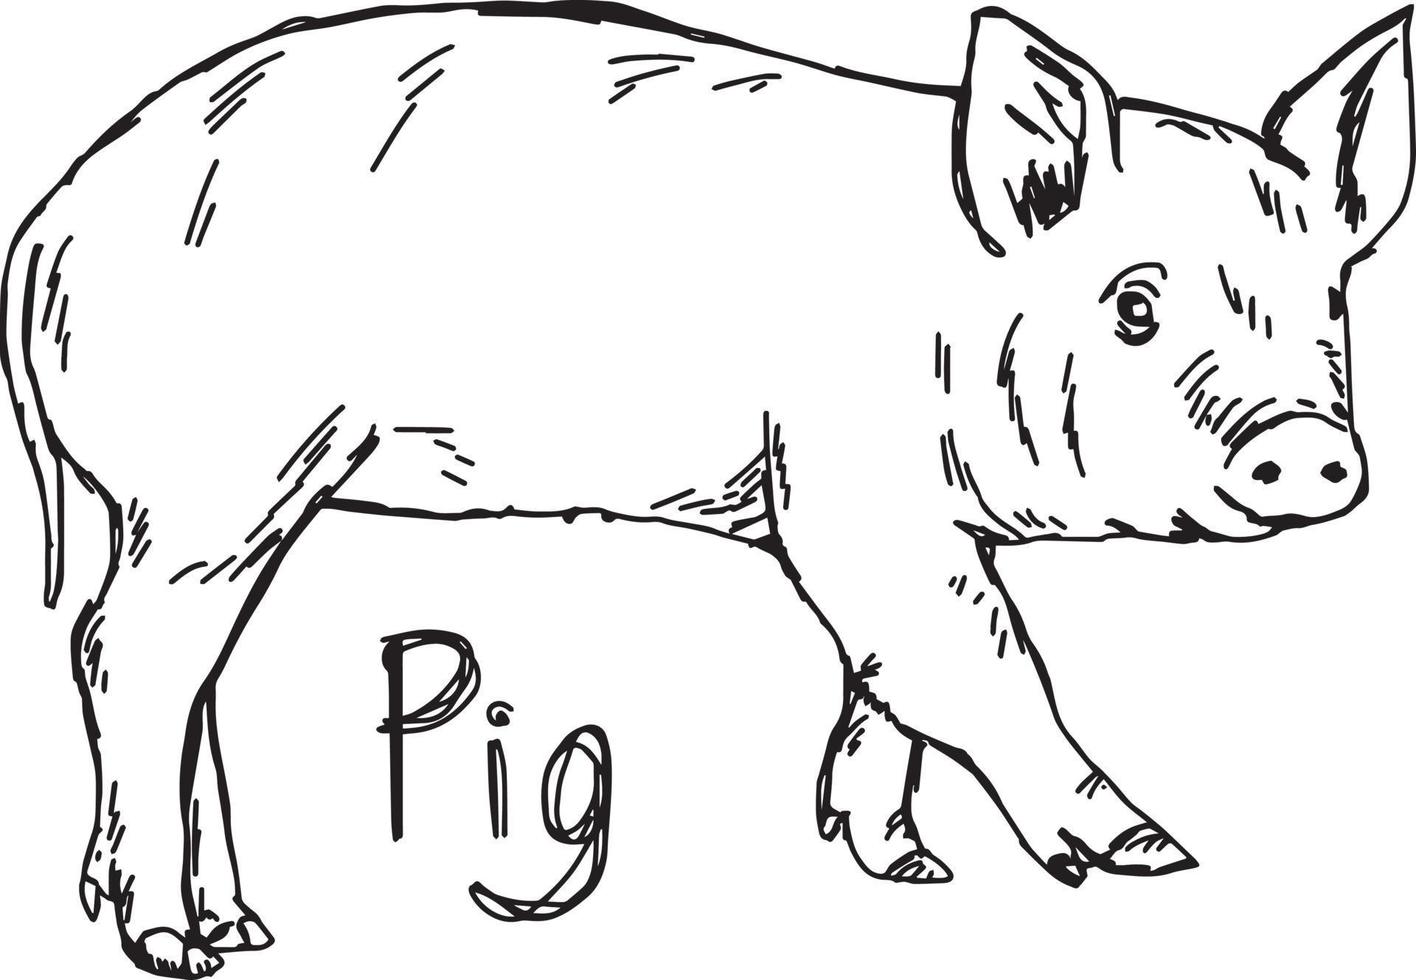 gris - vektor illustration skiss handritad med svarta linjer